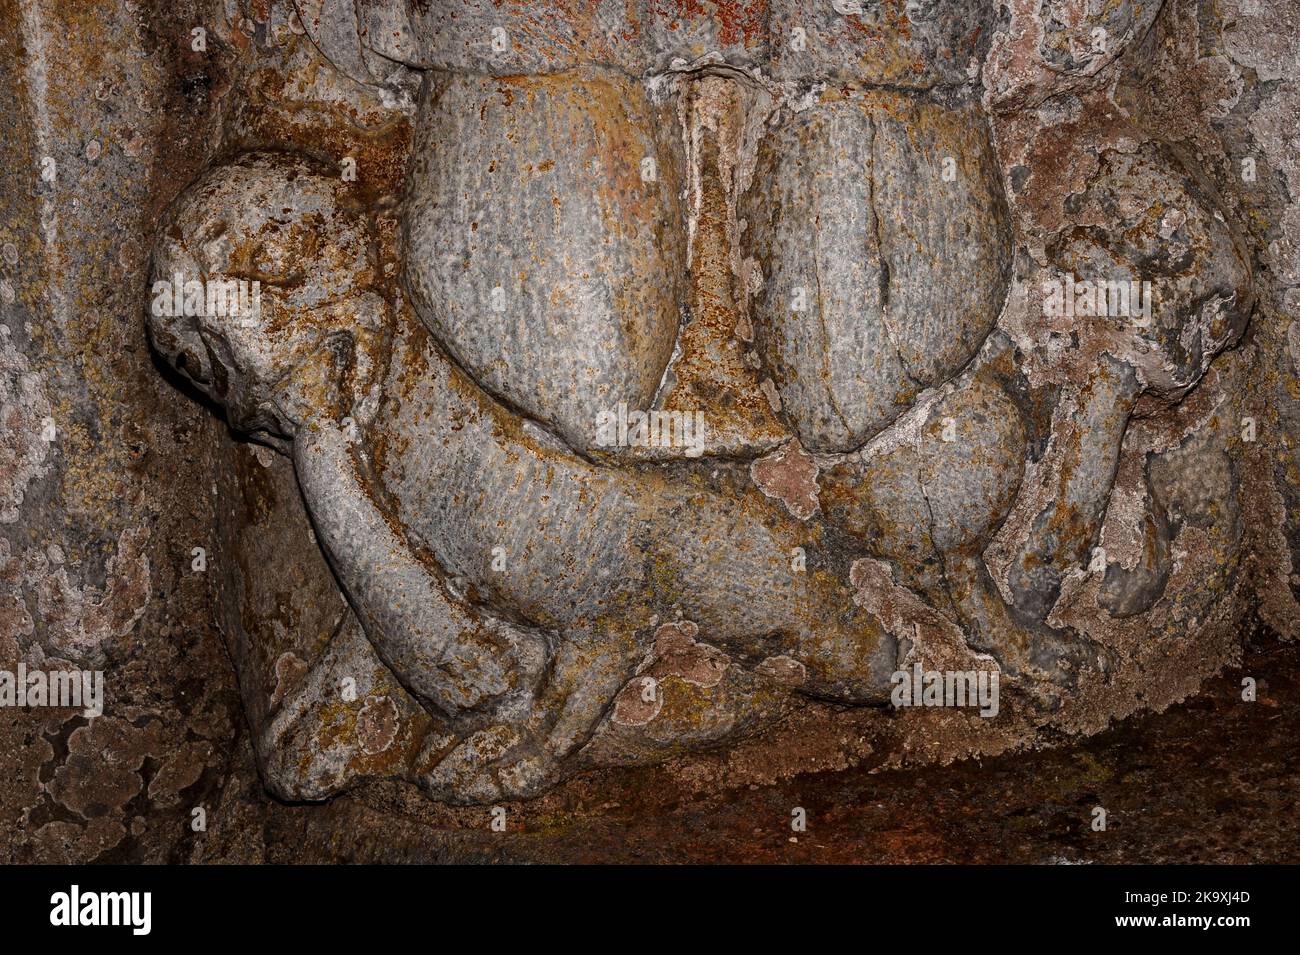 Mythische Monster fressen sich gegenseitig die Schwänze, während das gute symbolisch über das Böse triumst: Romanischer Skulpturenkanibalismus des 12.. Jahrhunderts unter den Füßen des frühchristlichen Märtyrers des Schuljungen, des heiligen Pastors, im Nordportal des Basilique Saint-Just, das 1200 n. Chr. in Valcabrère, im Südwesten Frankreichs, geweiht wurde. Stockfoto